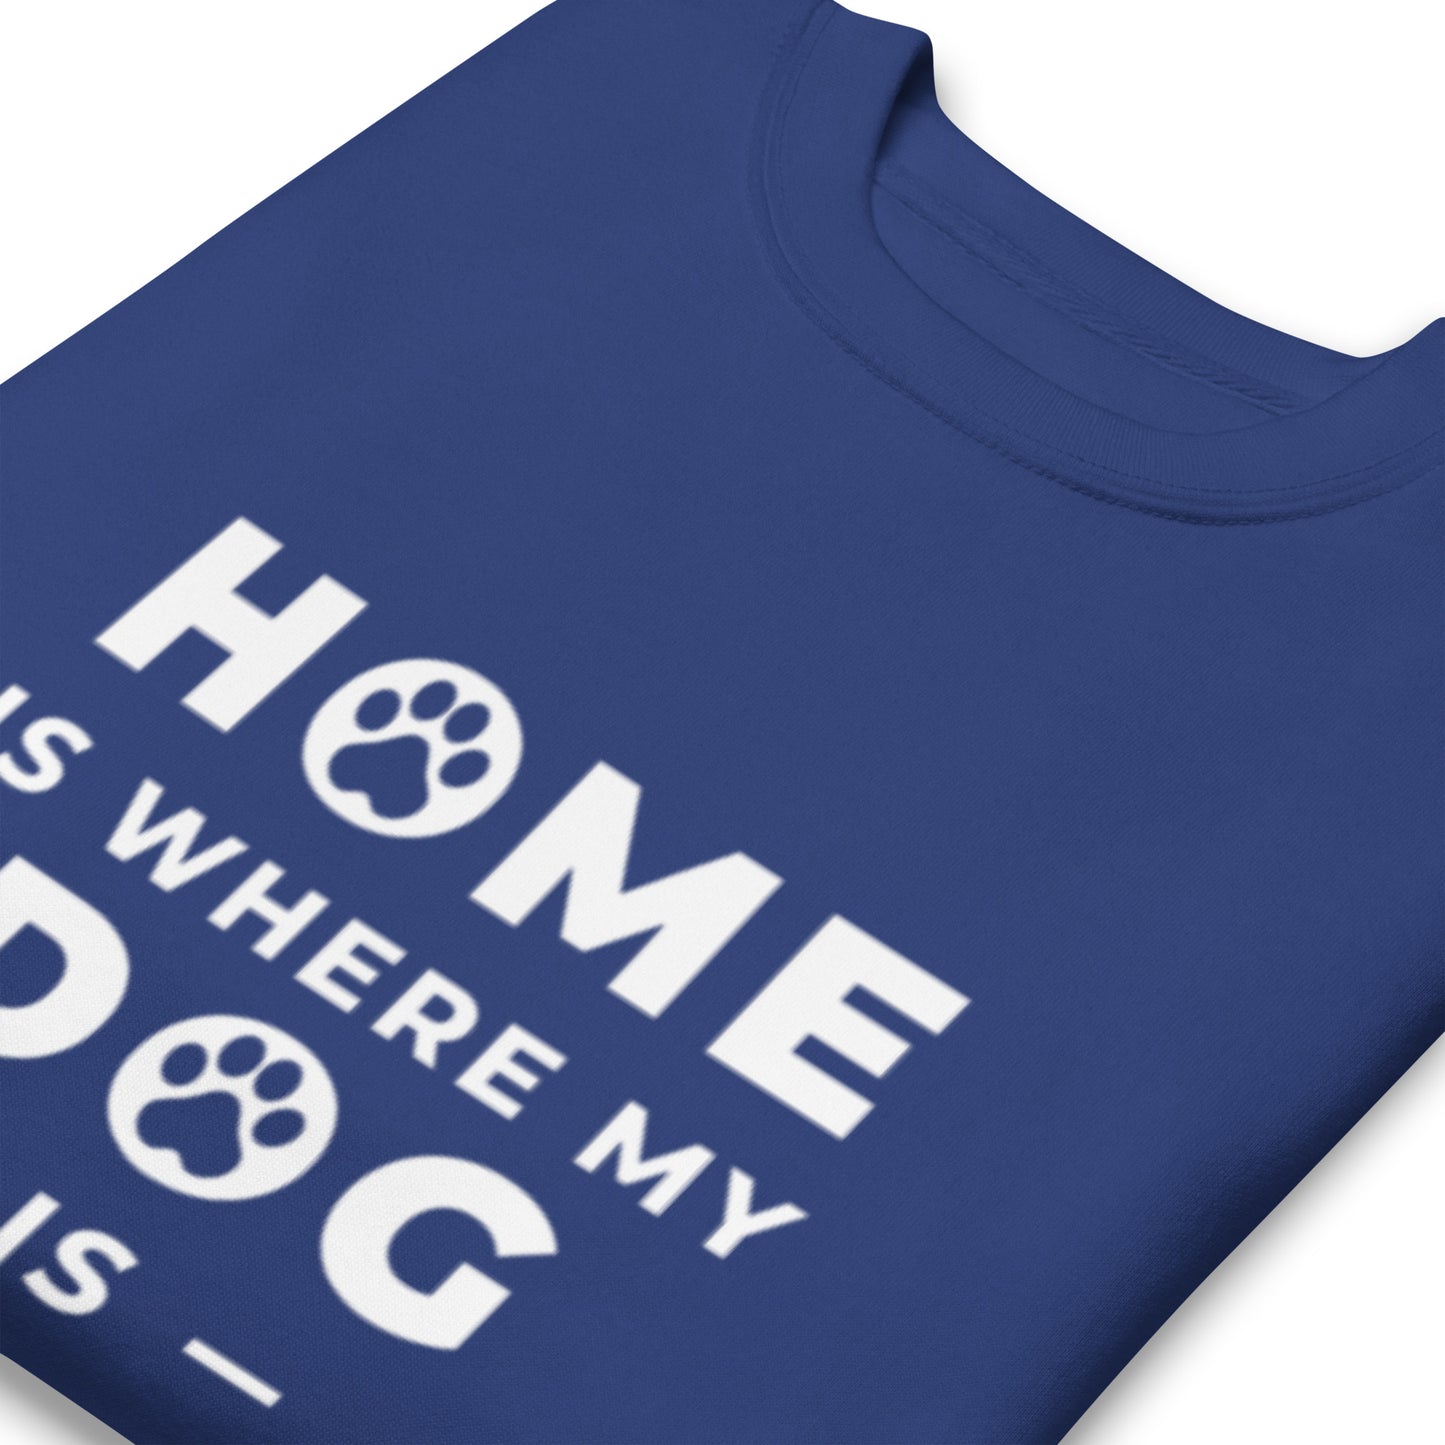 Home is Where my Dog is - Sweatshirt